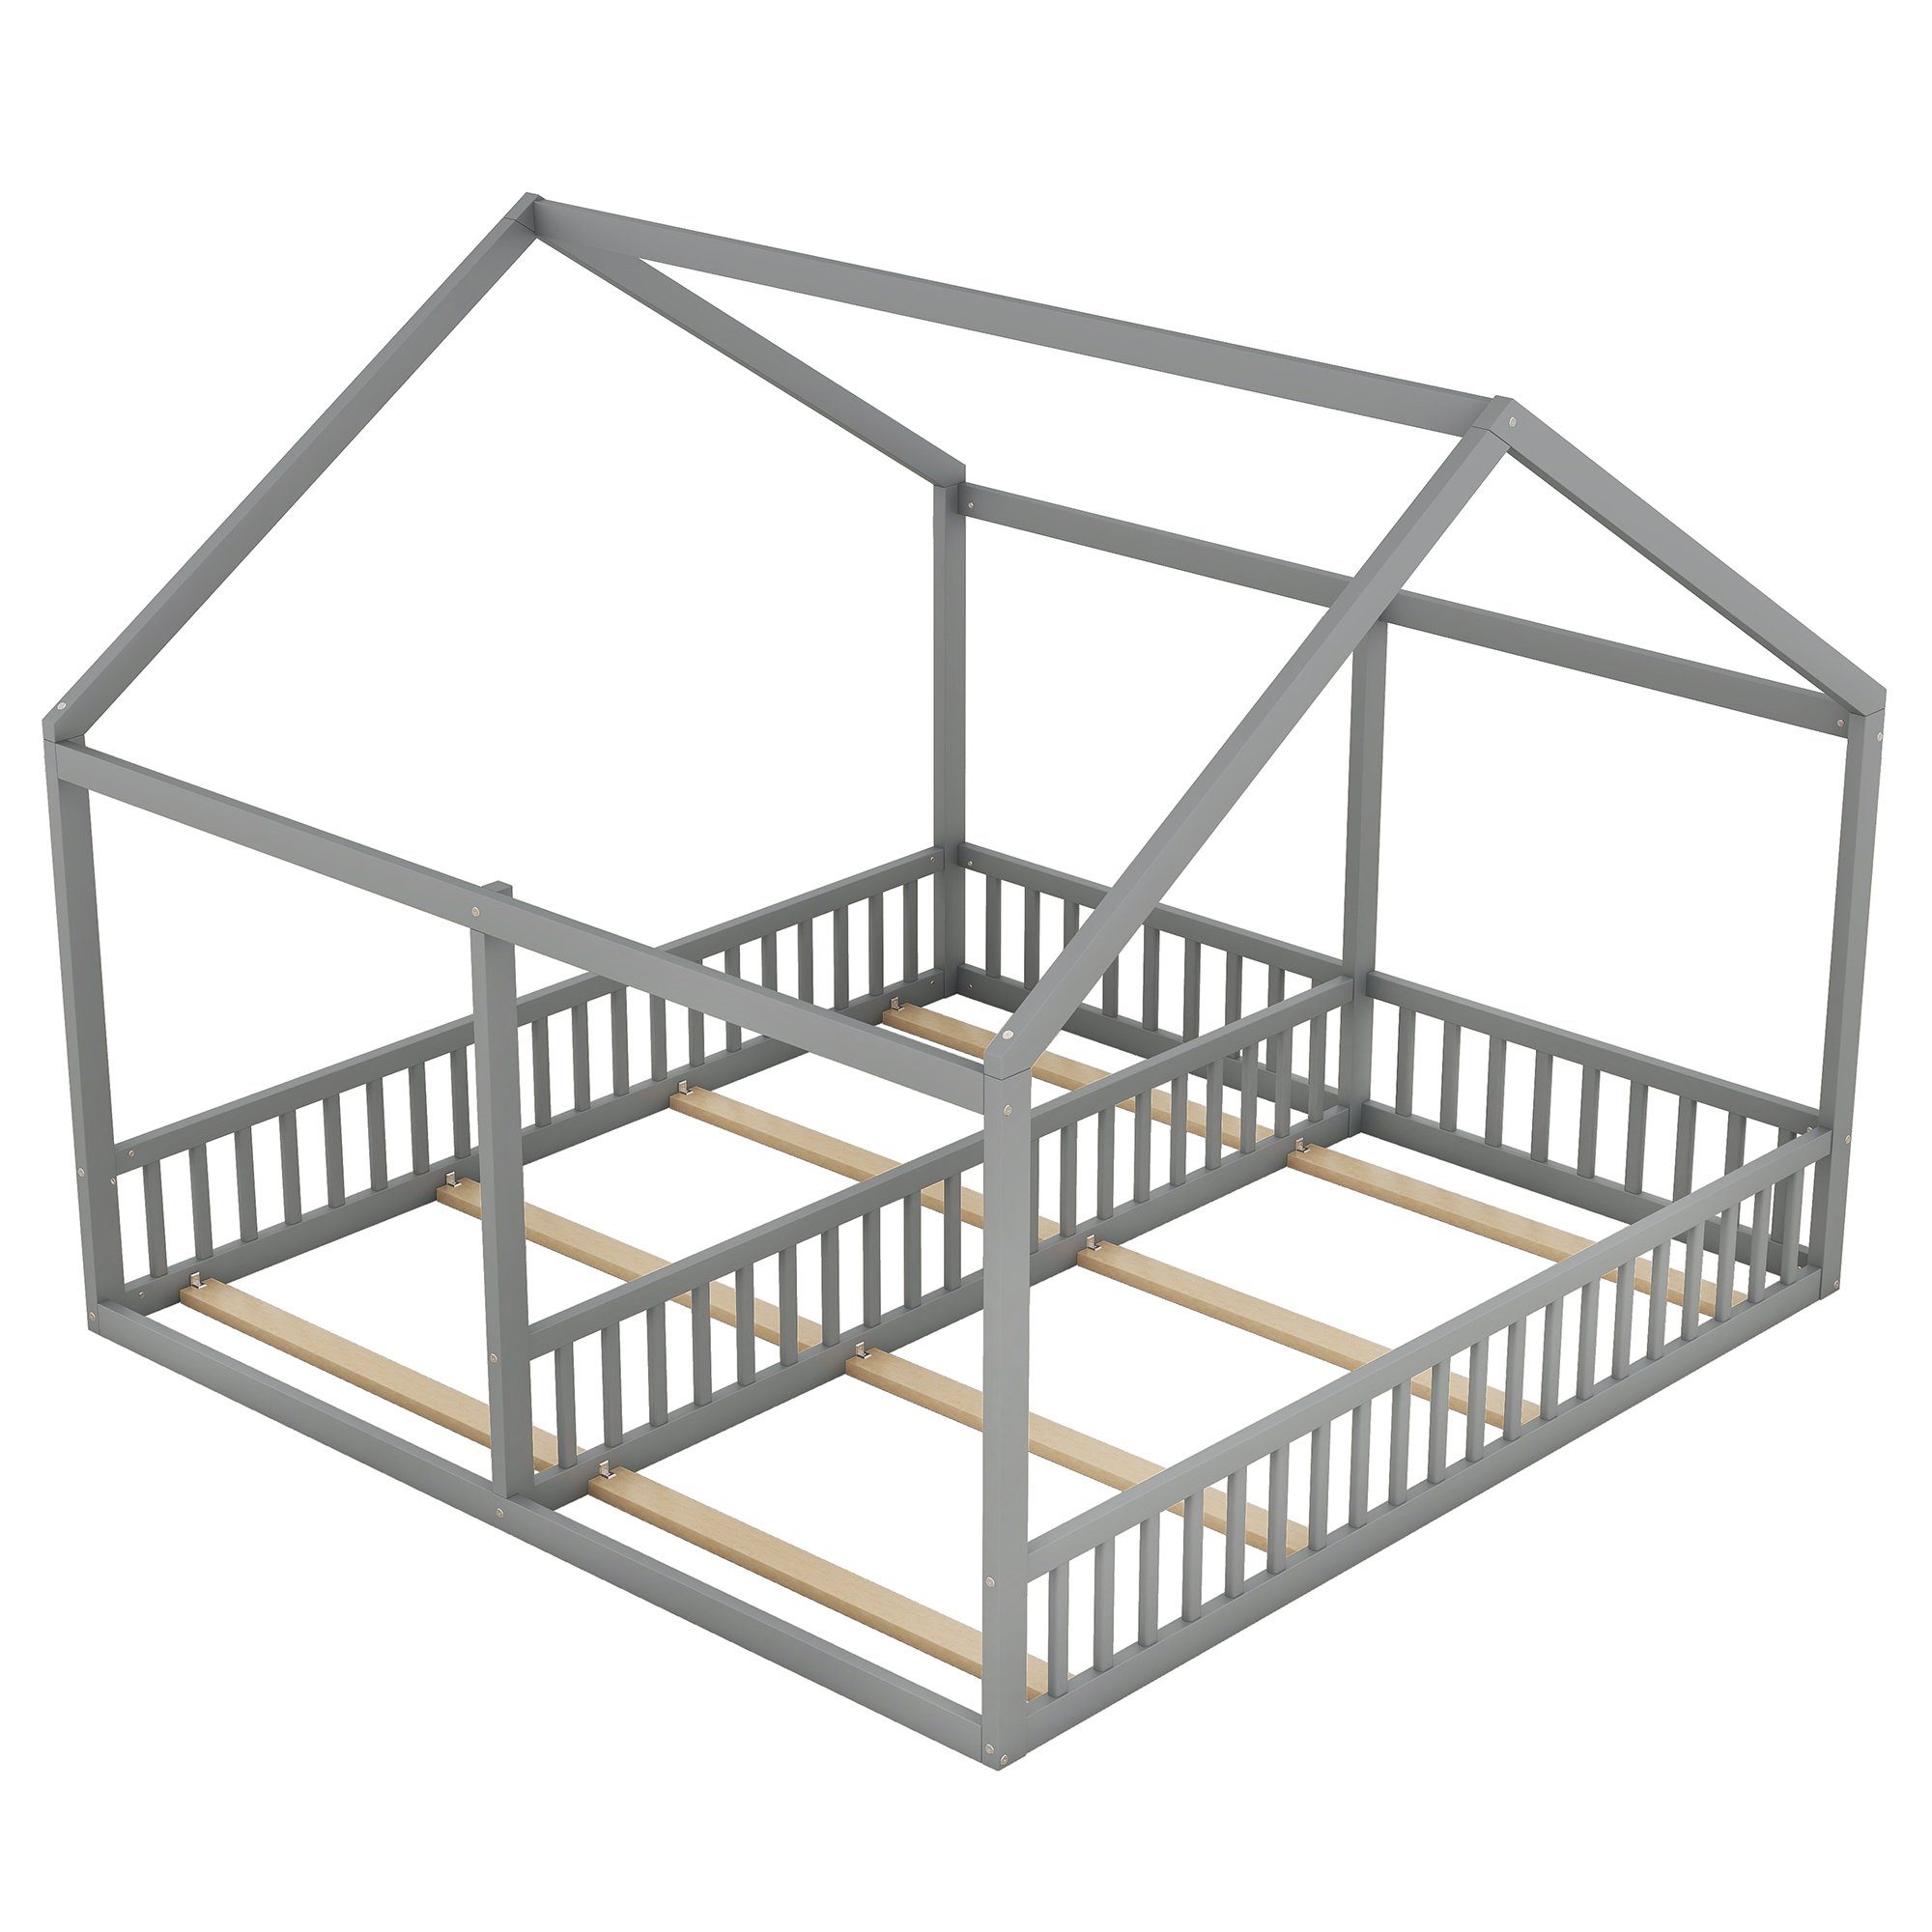 Kinderbett Einzelbetten, Grau (flache Matratze 2-in-1-Betten), Hausmodelle, Funktionsbett Holzbett ohne Betten, 2-in-1-Betten WISHDOR